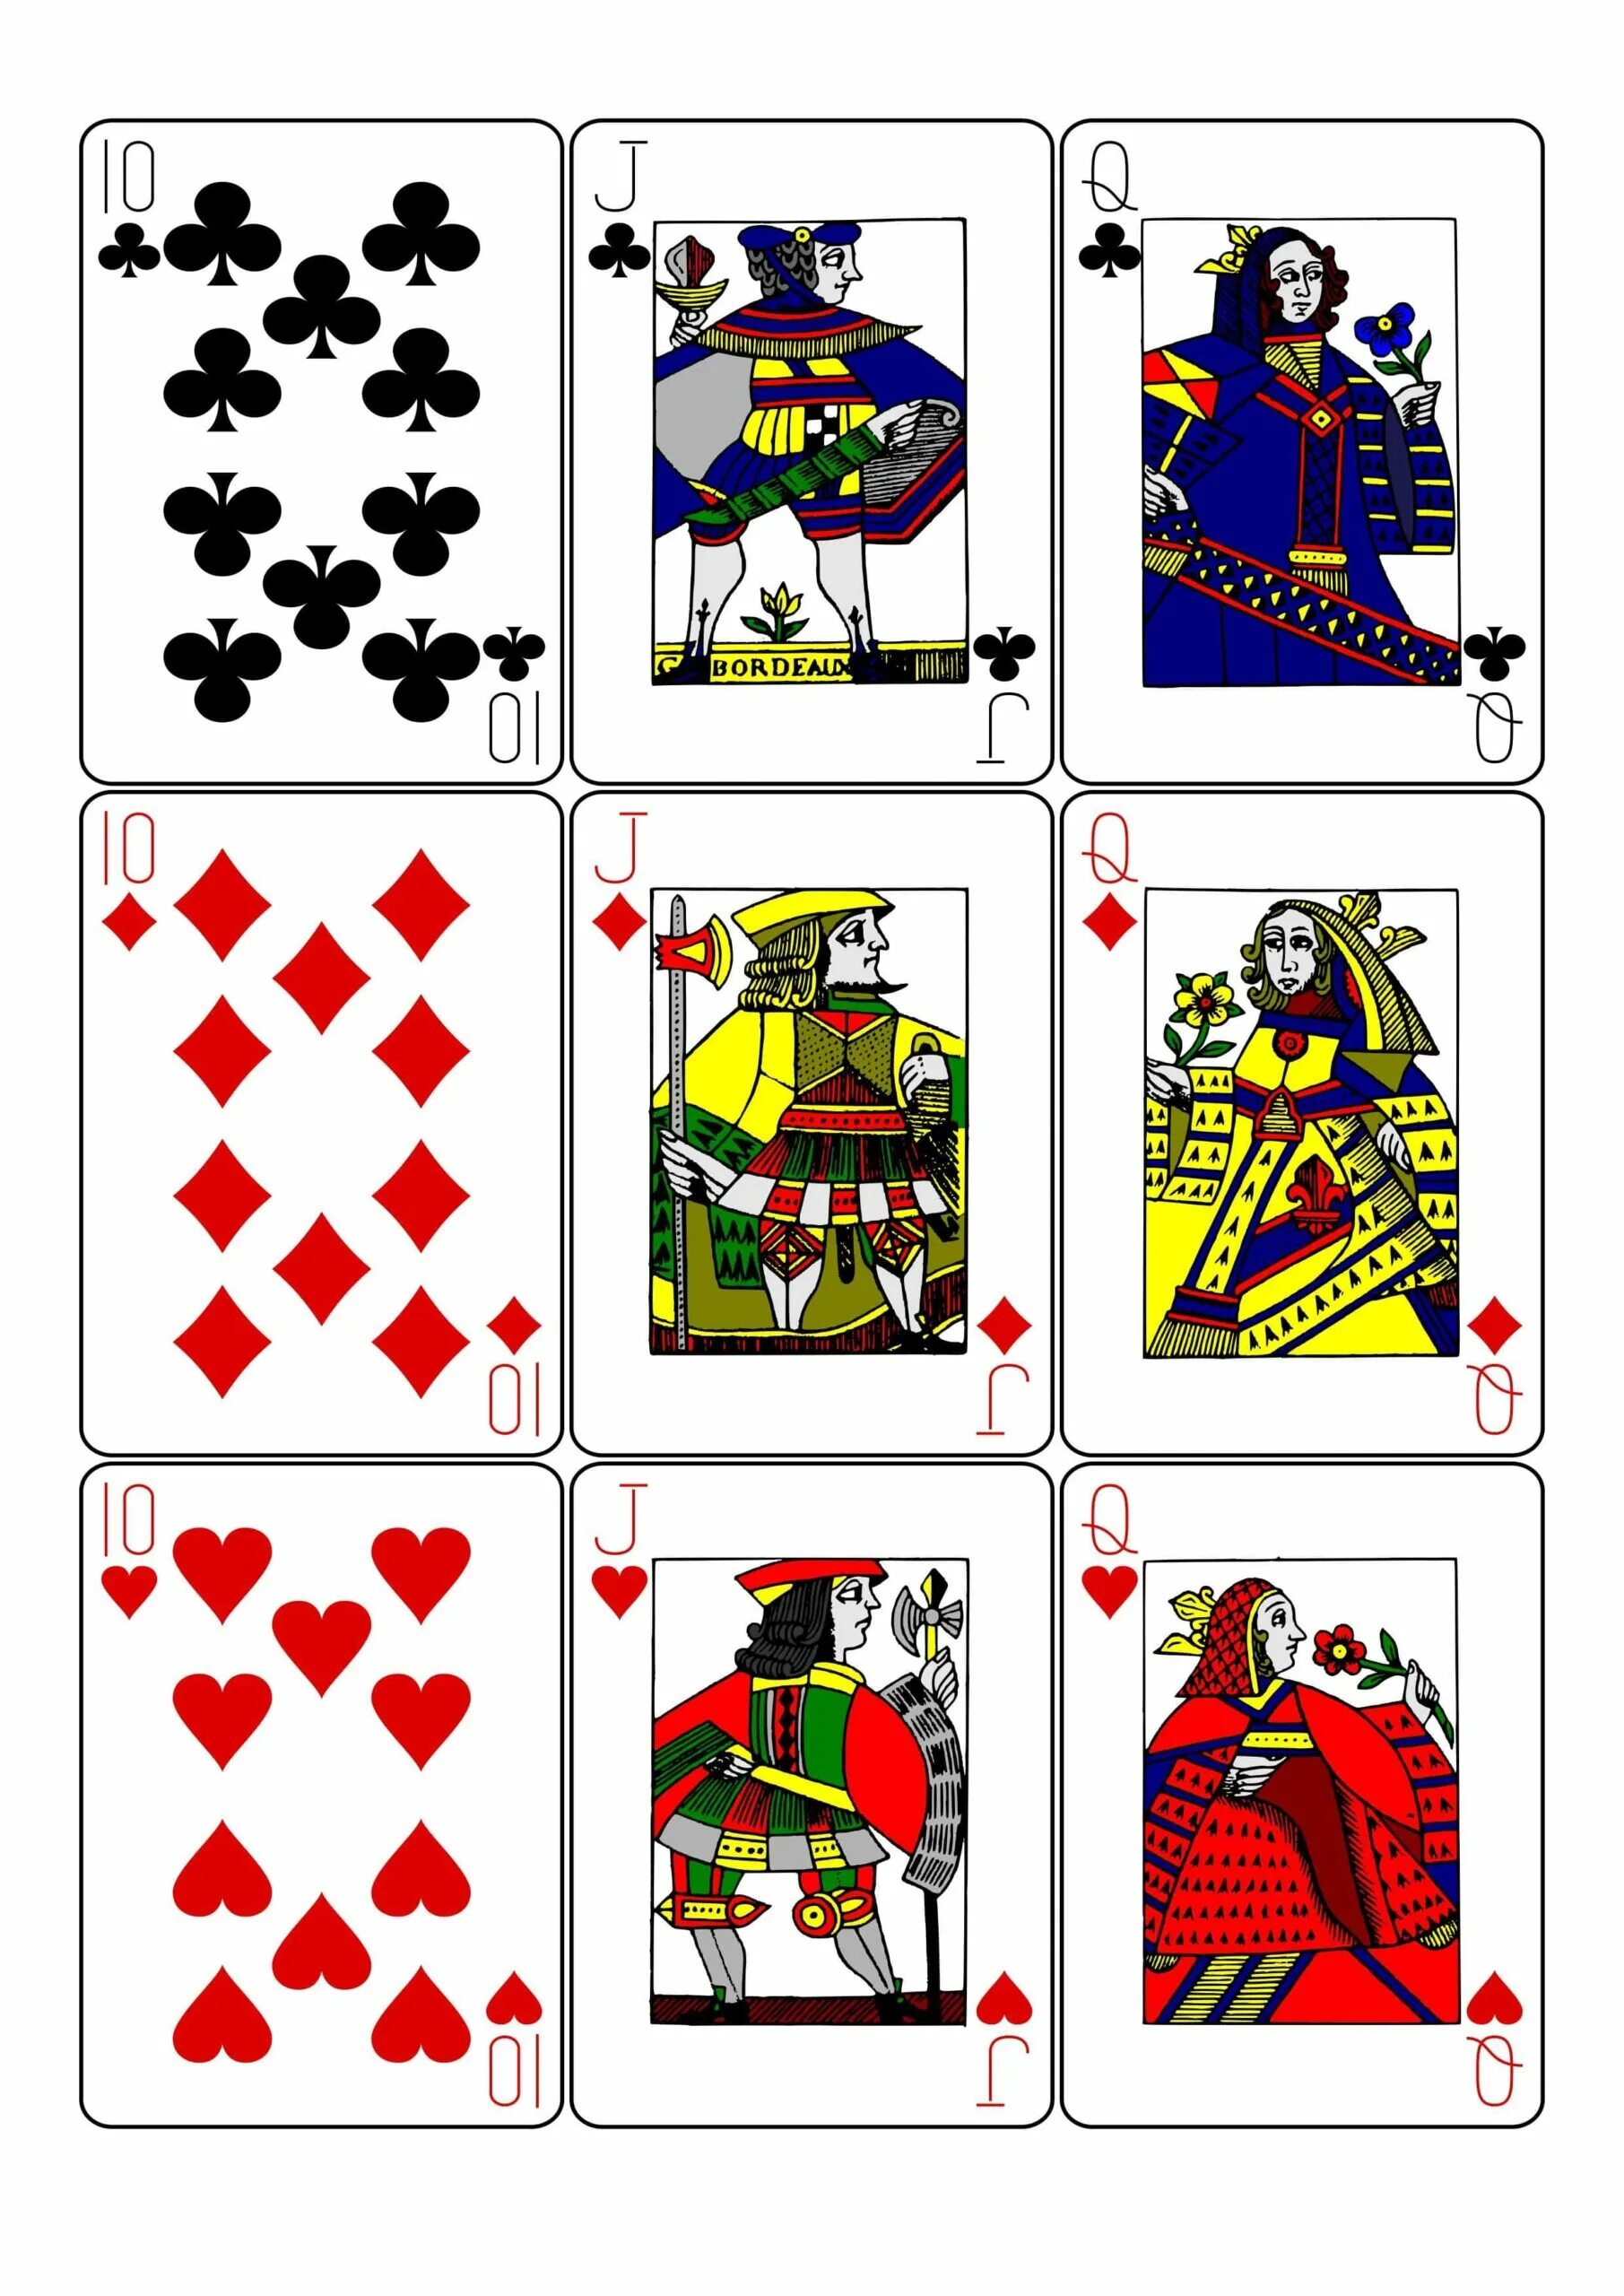 Printable cards. Колода из 52 карт. Распечатка колоды карт для игры.. Рисунки на картах игральных своими руками. Напечатать карточки.